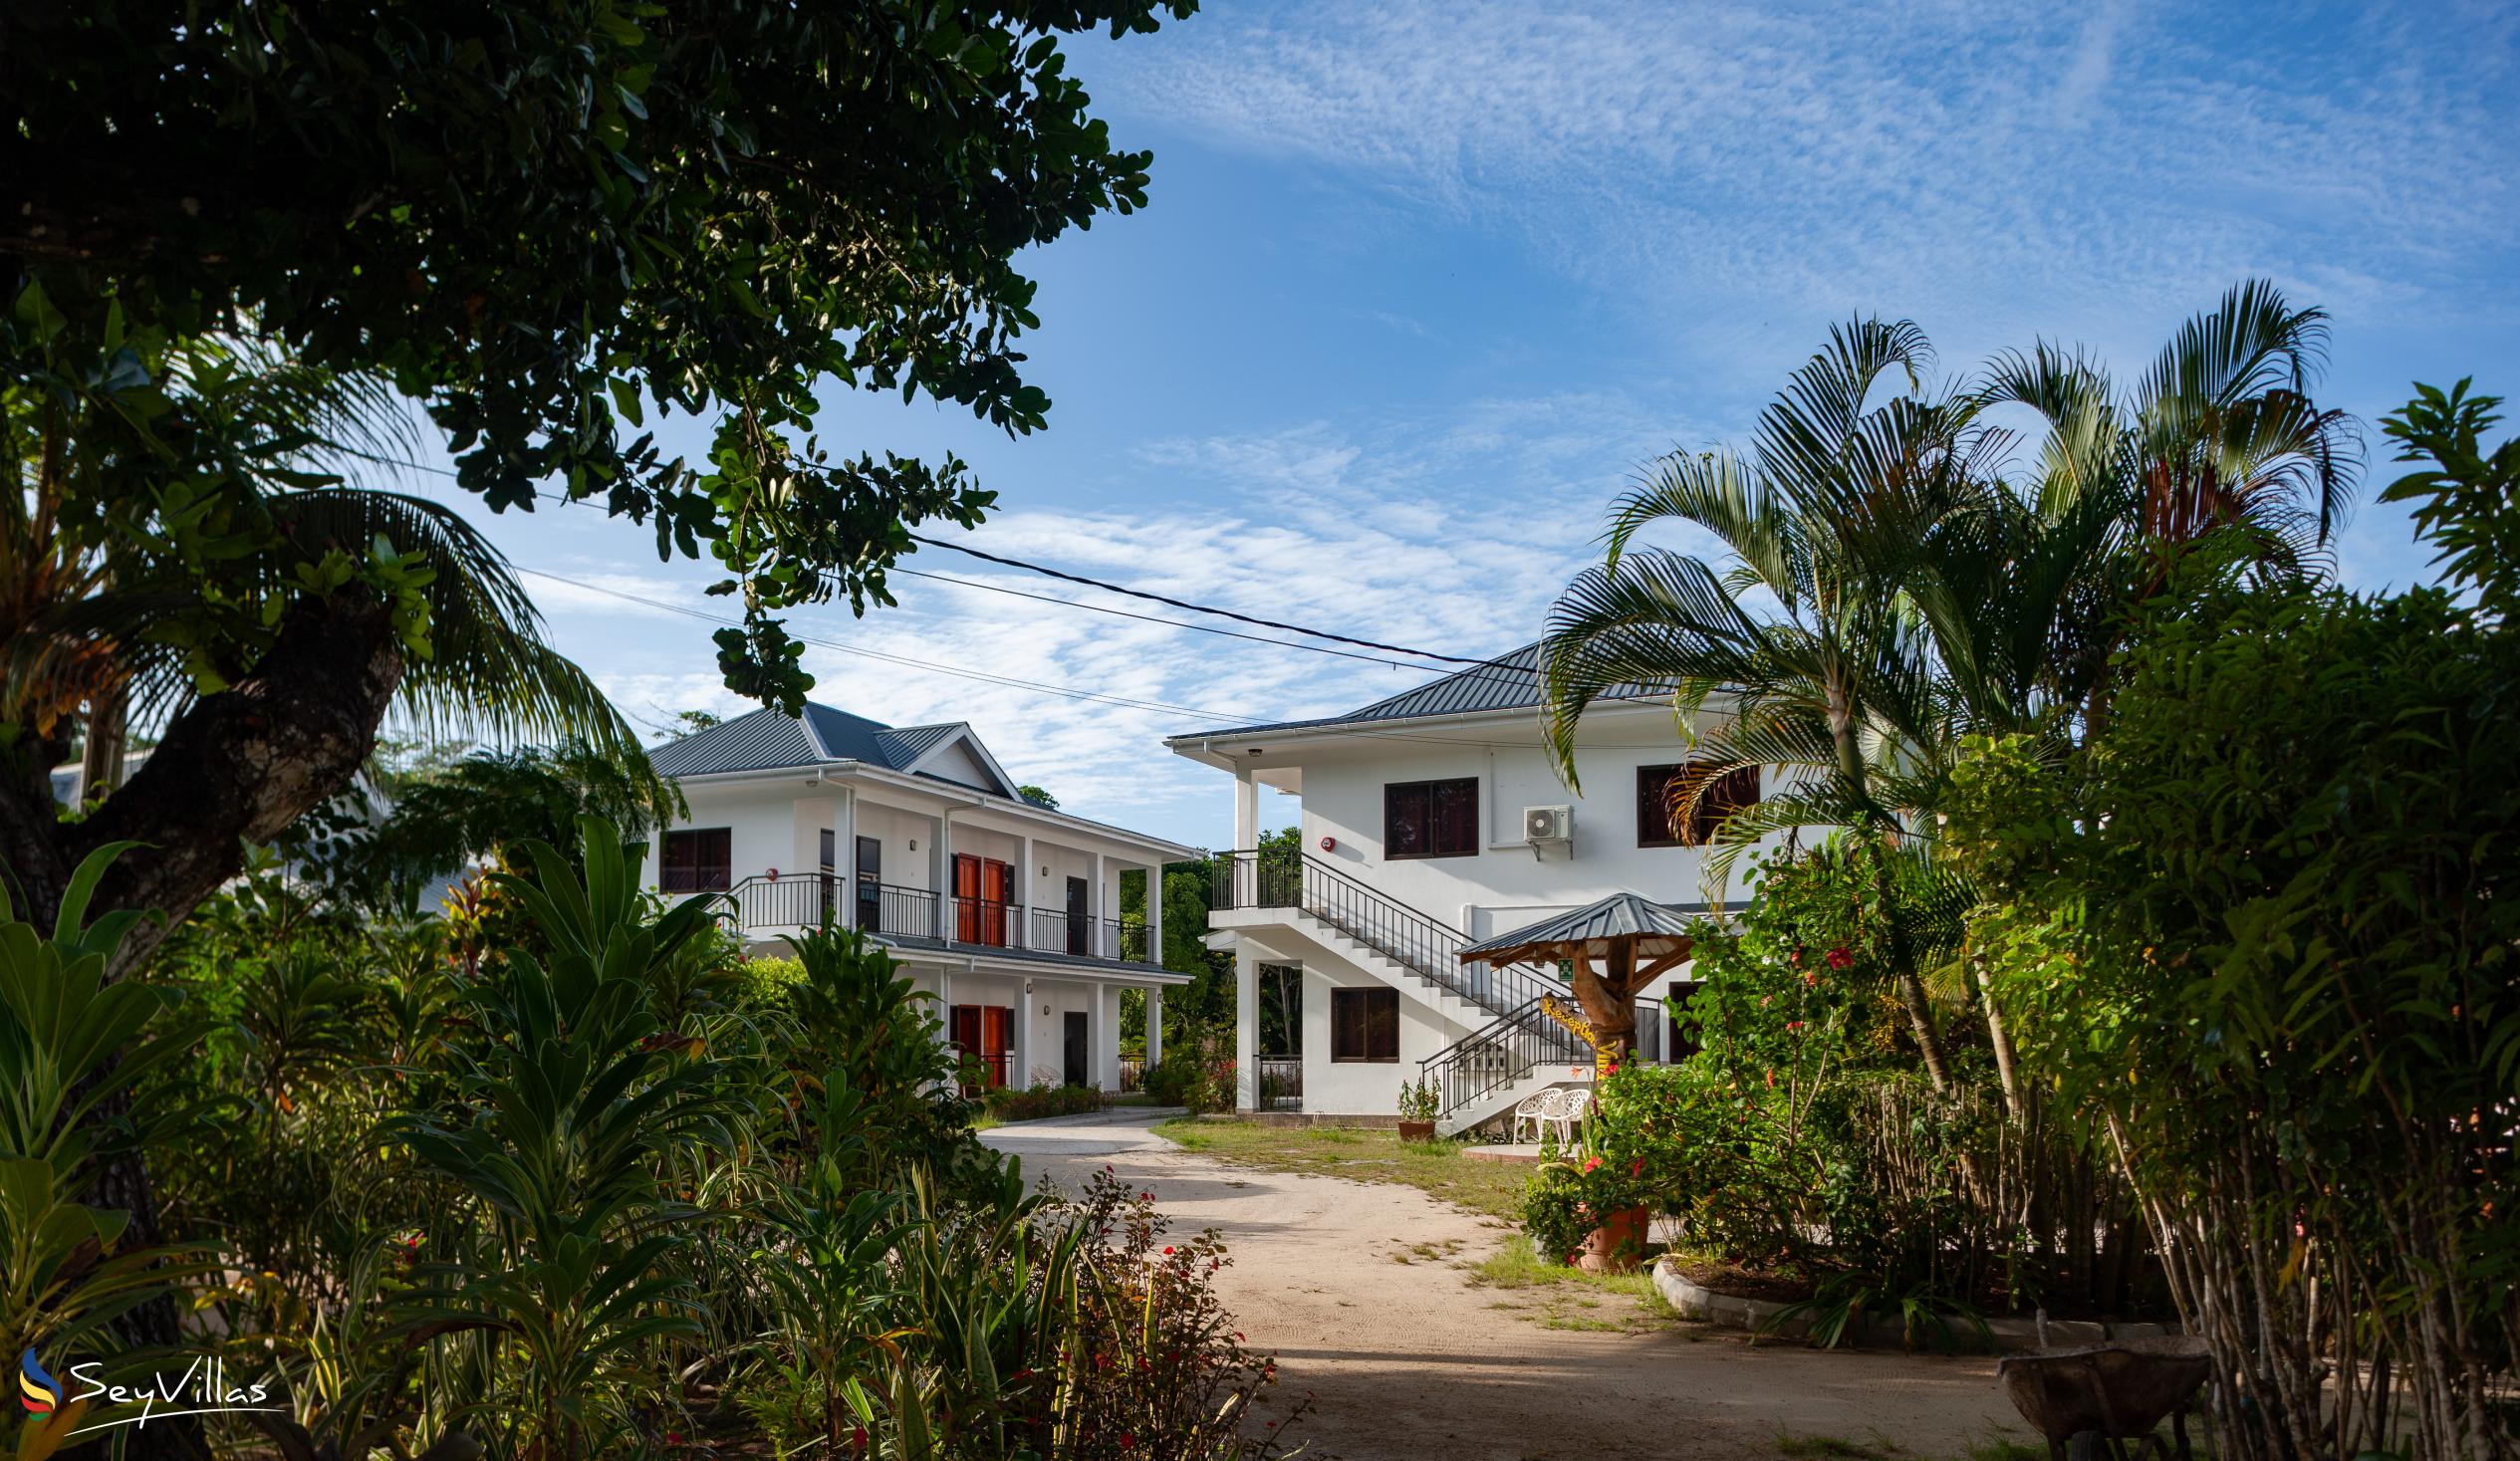 Foto 19: Villa Veuve - Aussenbereich - La Digue (Seychellen)